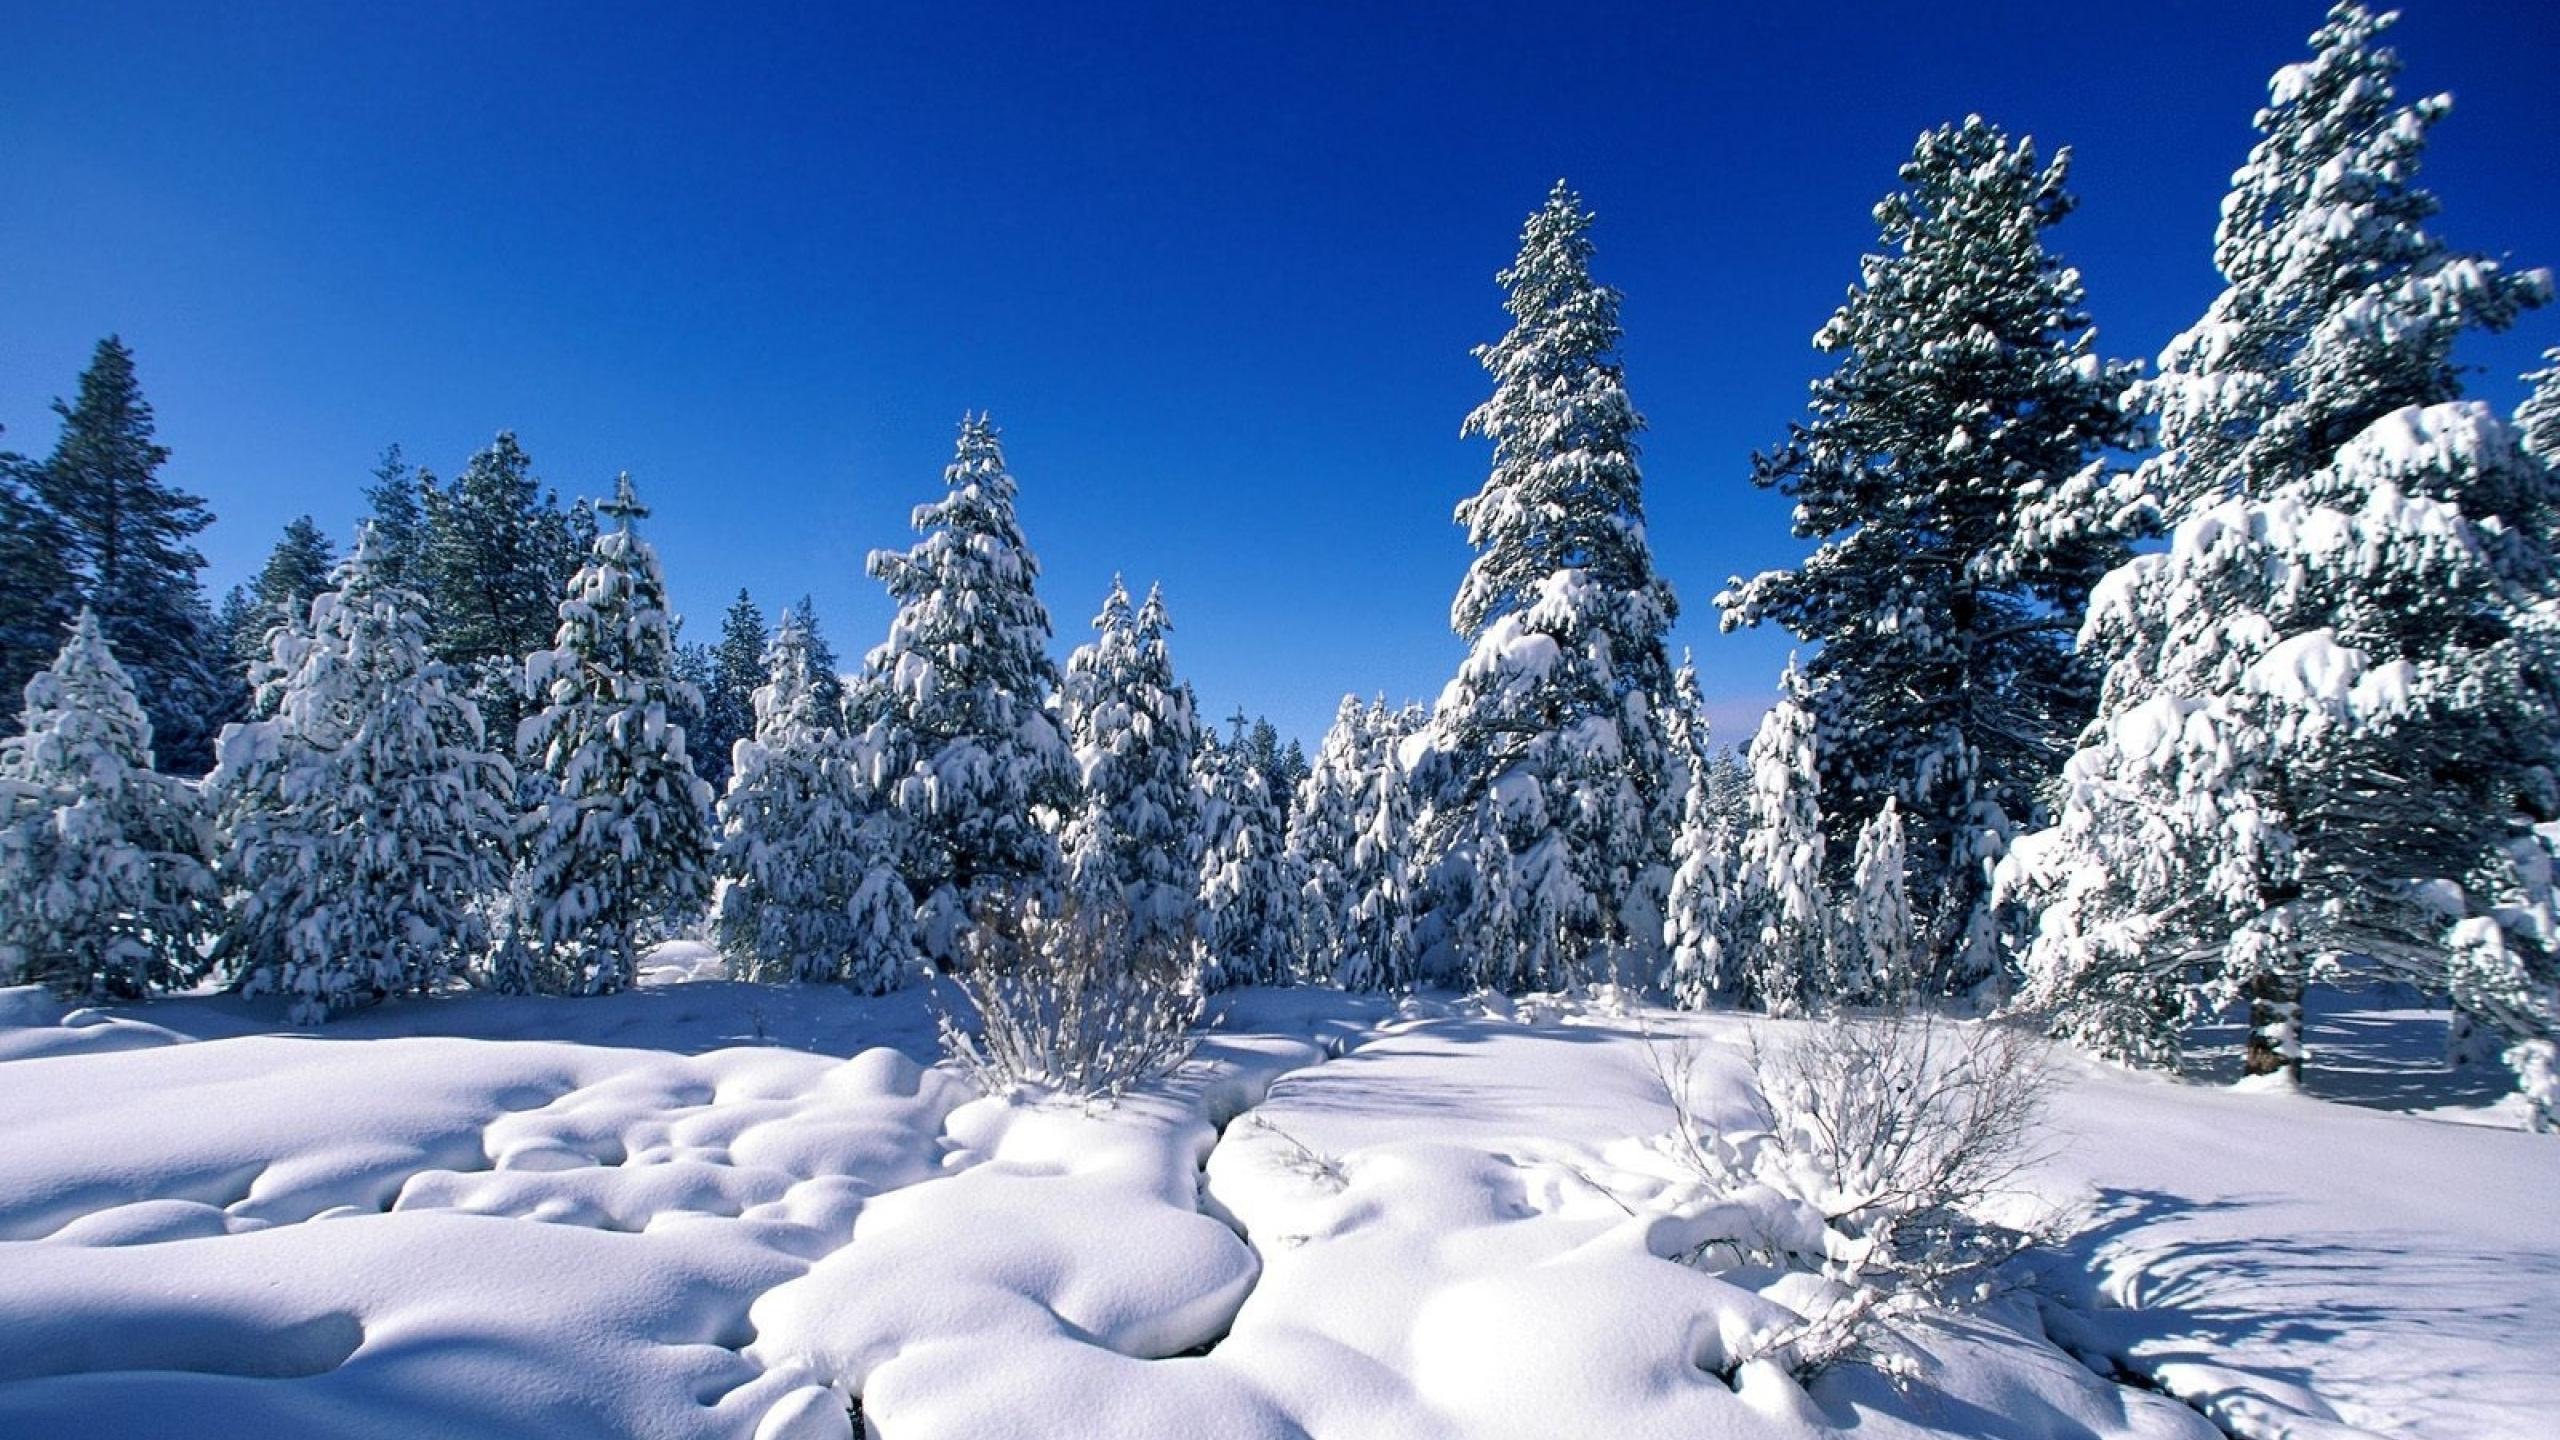 性质, 冬天, 冻结, 荒野, 天空 壁纸 2560x1440 允许